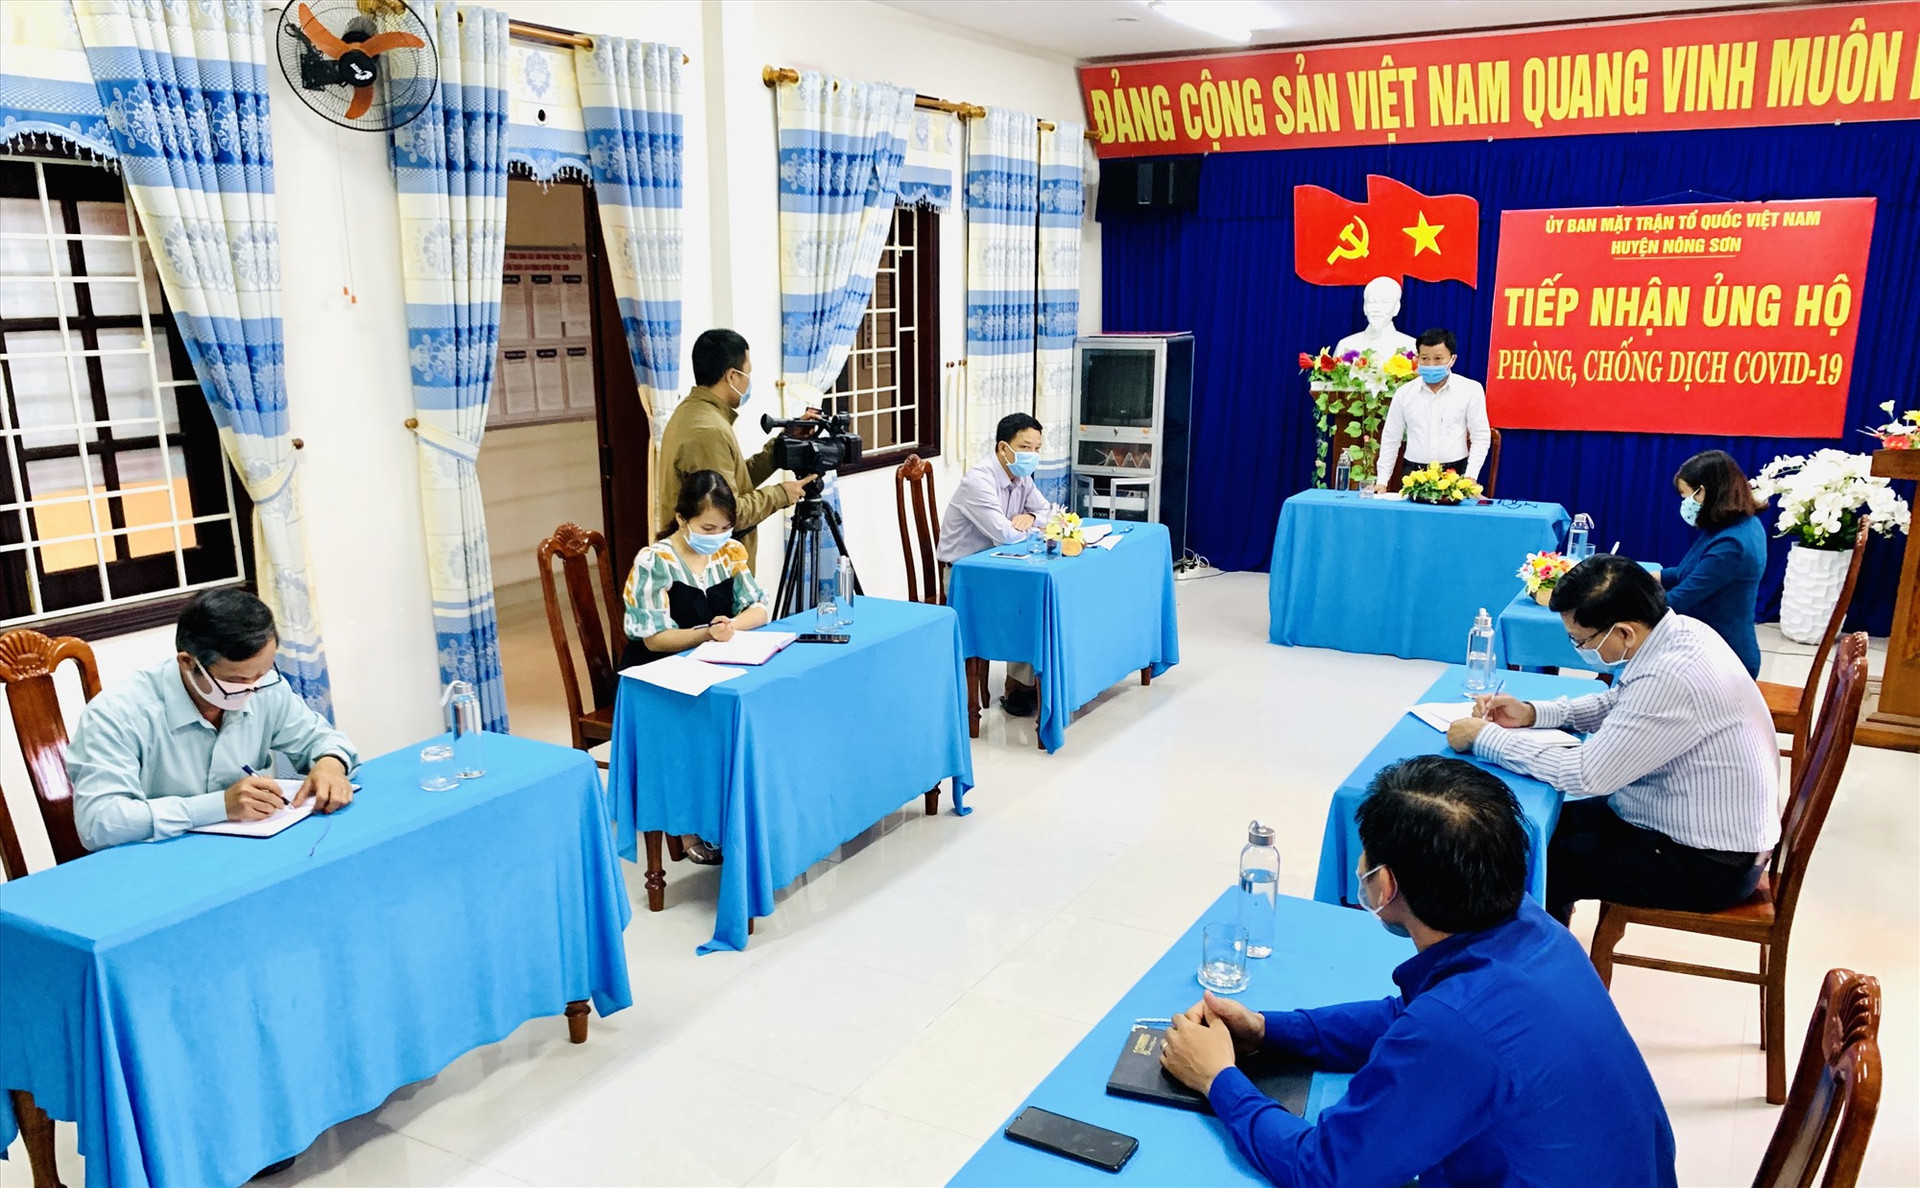 Ông Thái Bình - Bí thư Huyện ủy Nông Sơn đánh giá cao những nỗ lực của Ủy ban MTTQ Việt Nam và các đoàn thể chính trị - xã hội trong phòng, chống dịch Covid-19.